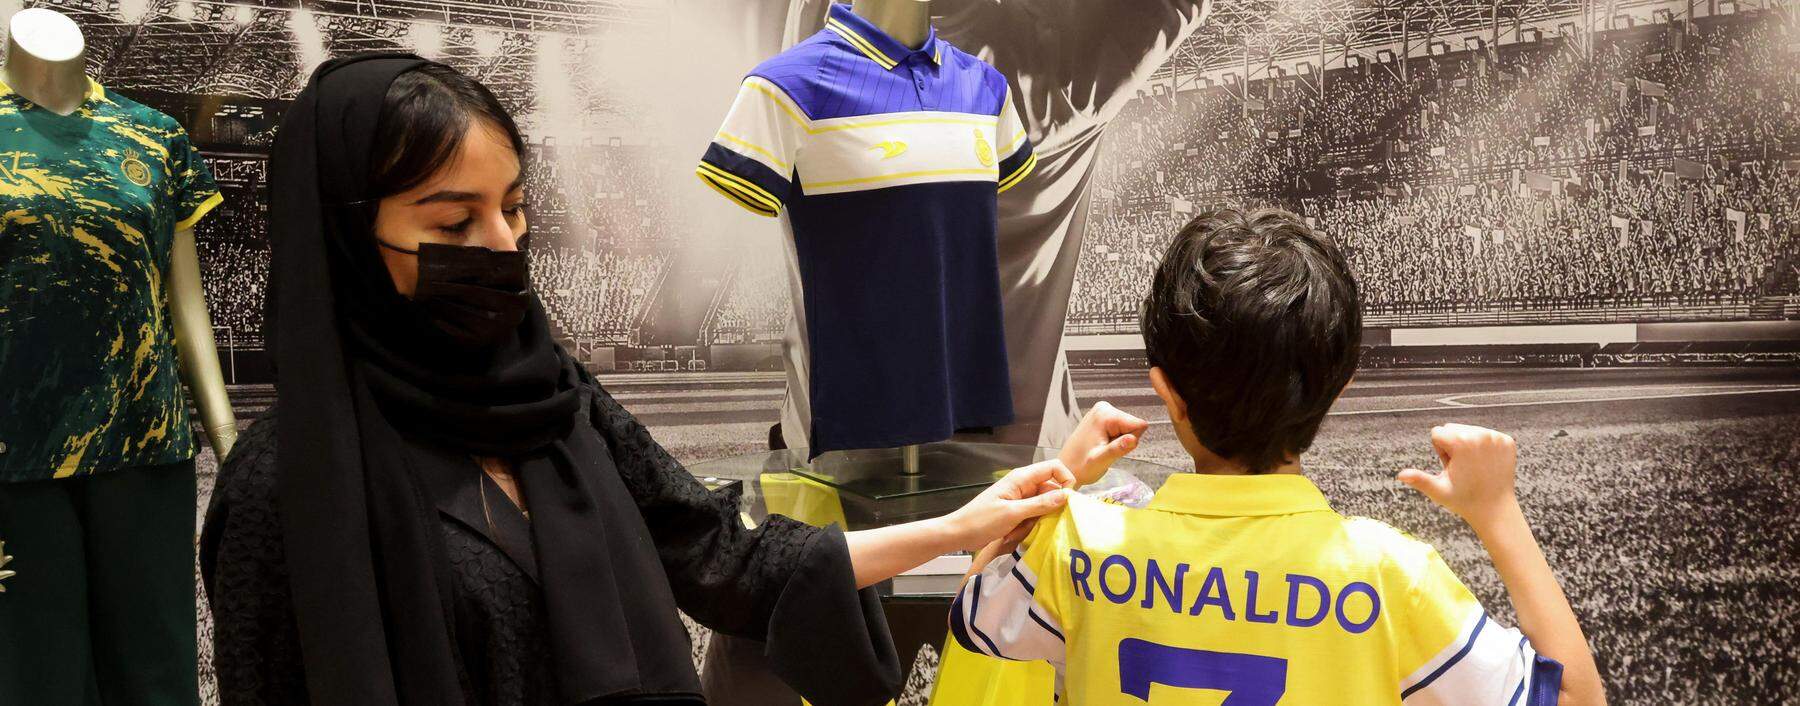 Das Trikot von Cristiano Ronaldo ist in Saudiarabien ein Kassenschlager, im Schnitt wurden in den vergangenen Monaten in Riad allein 400 Stück pro Tag verlauft um 100 Dollar.